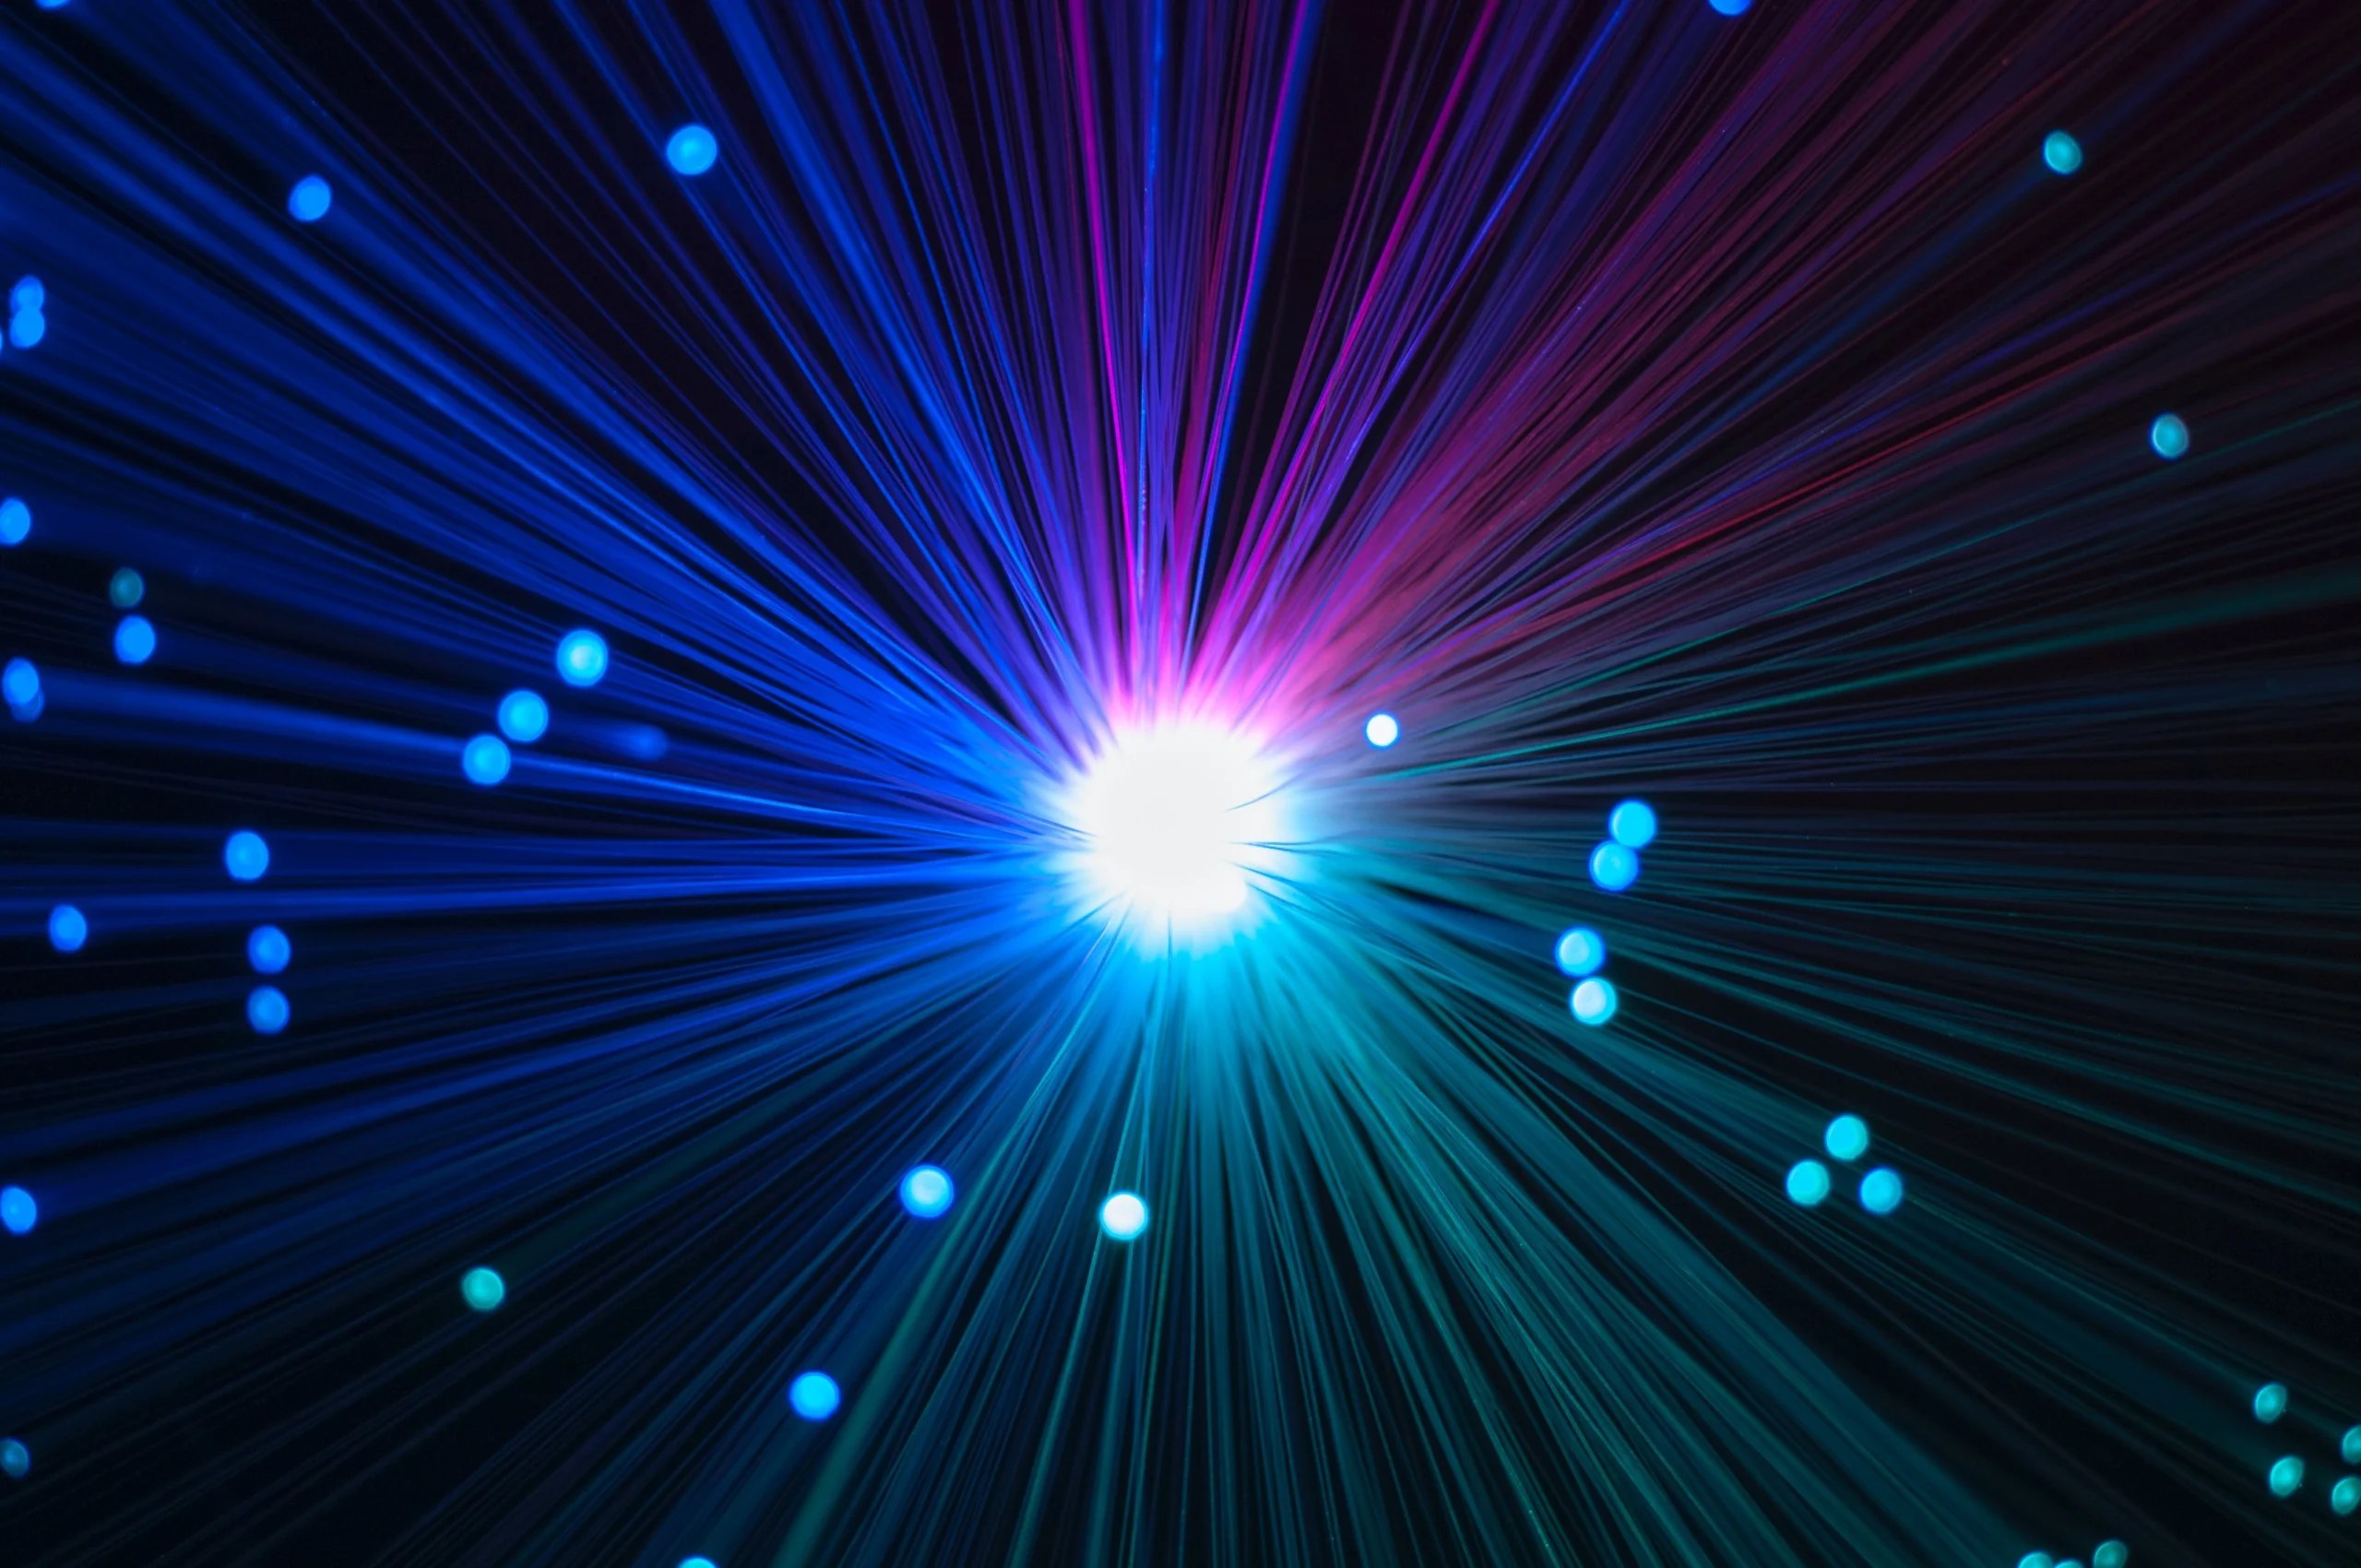 44,2 térabits par seconde (Tbit/s) : le record du débit internet sur une seule fibre optique a été battu